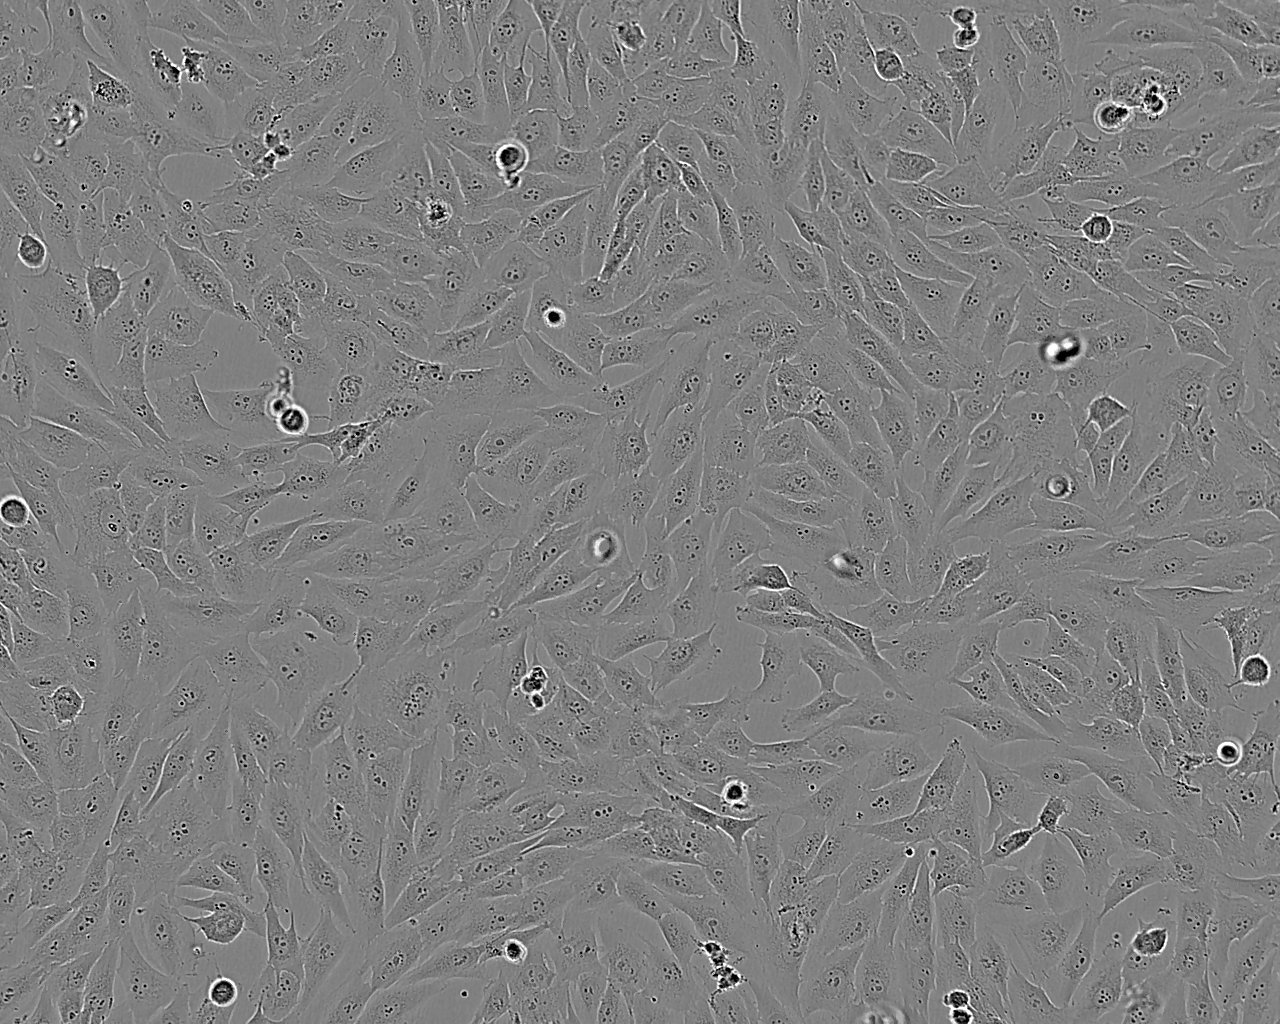 Psi2 DAP Cell|小鼠胚胎成纤维细胞,Psi2 DAP Cell